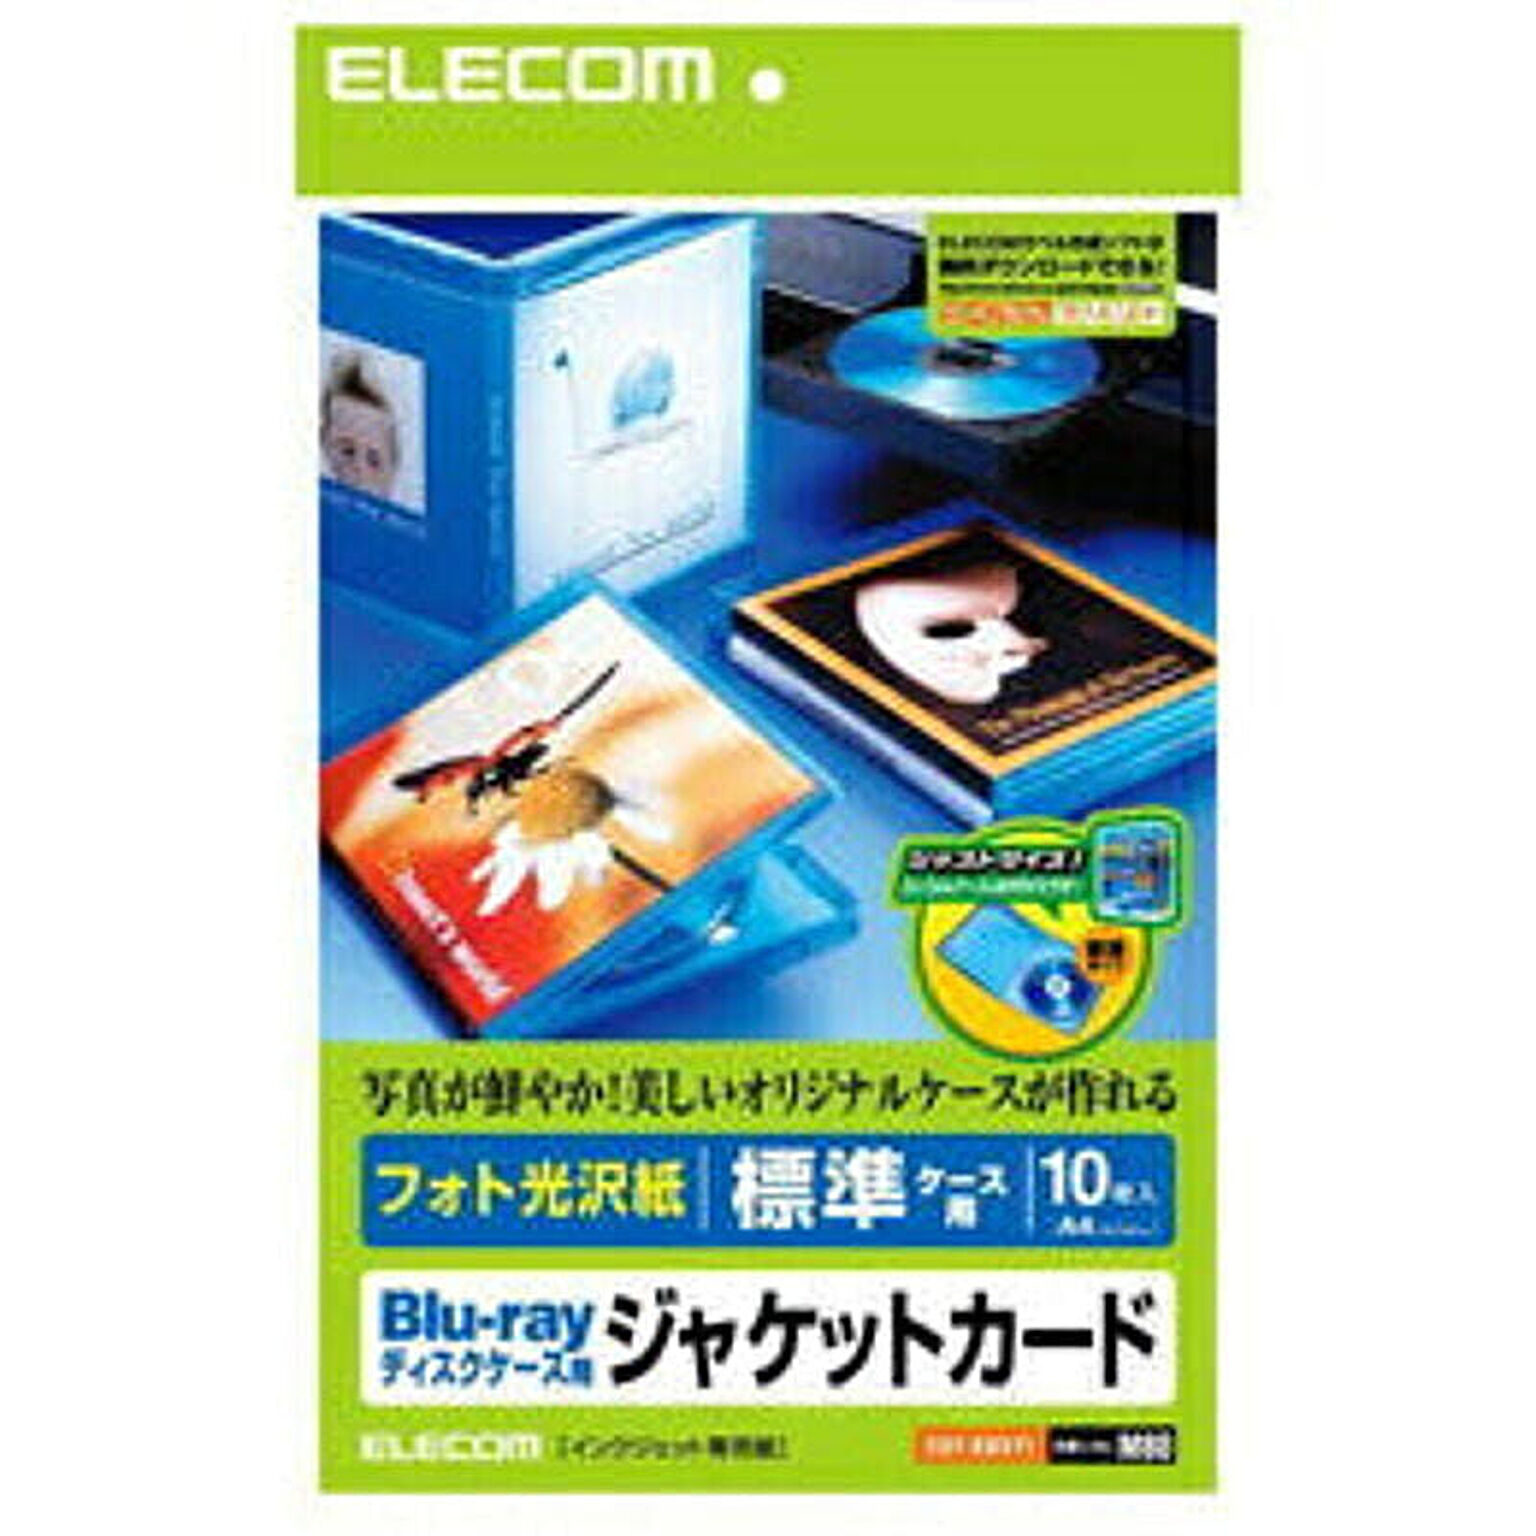 エレコム Blu-rayディスクケースジャケットカード EDT-KBDT1 管理No. 4953103203969